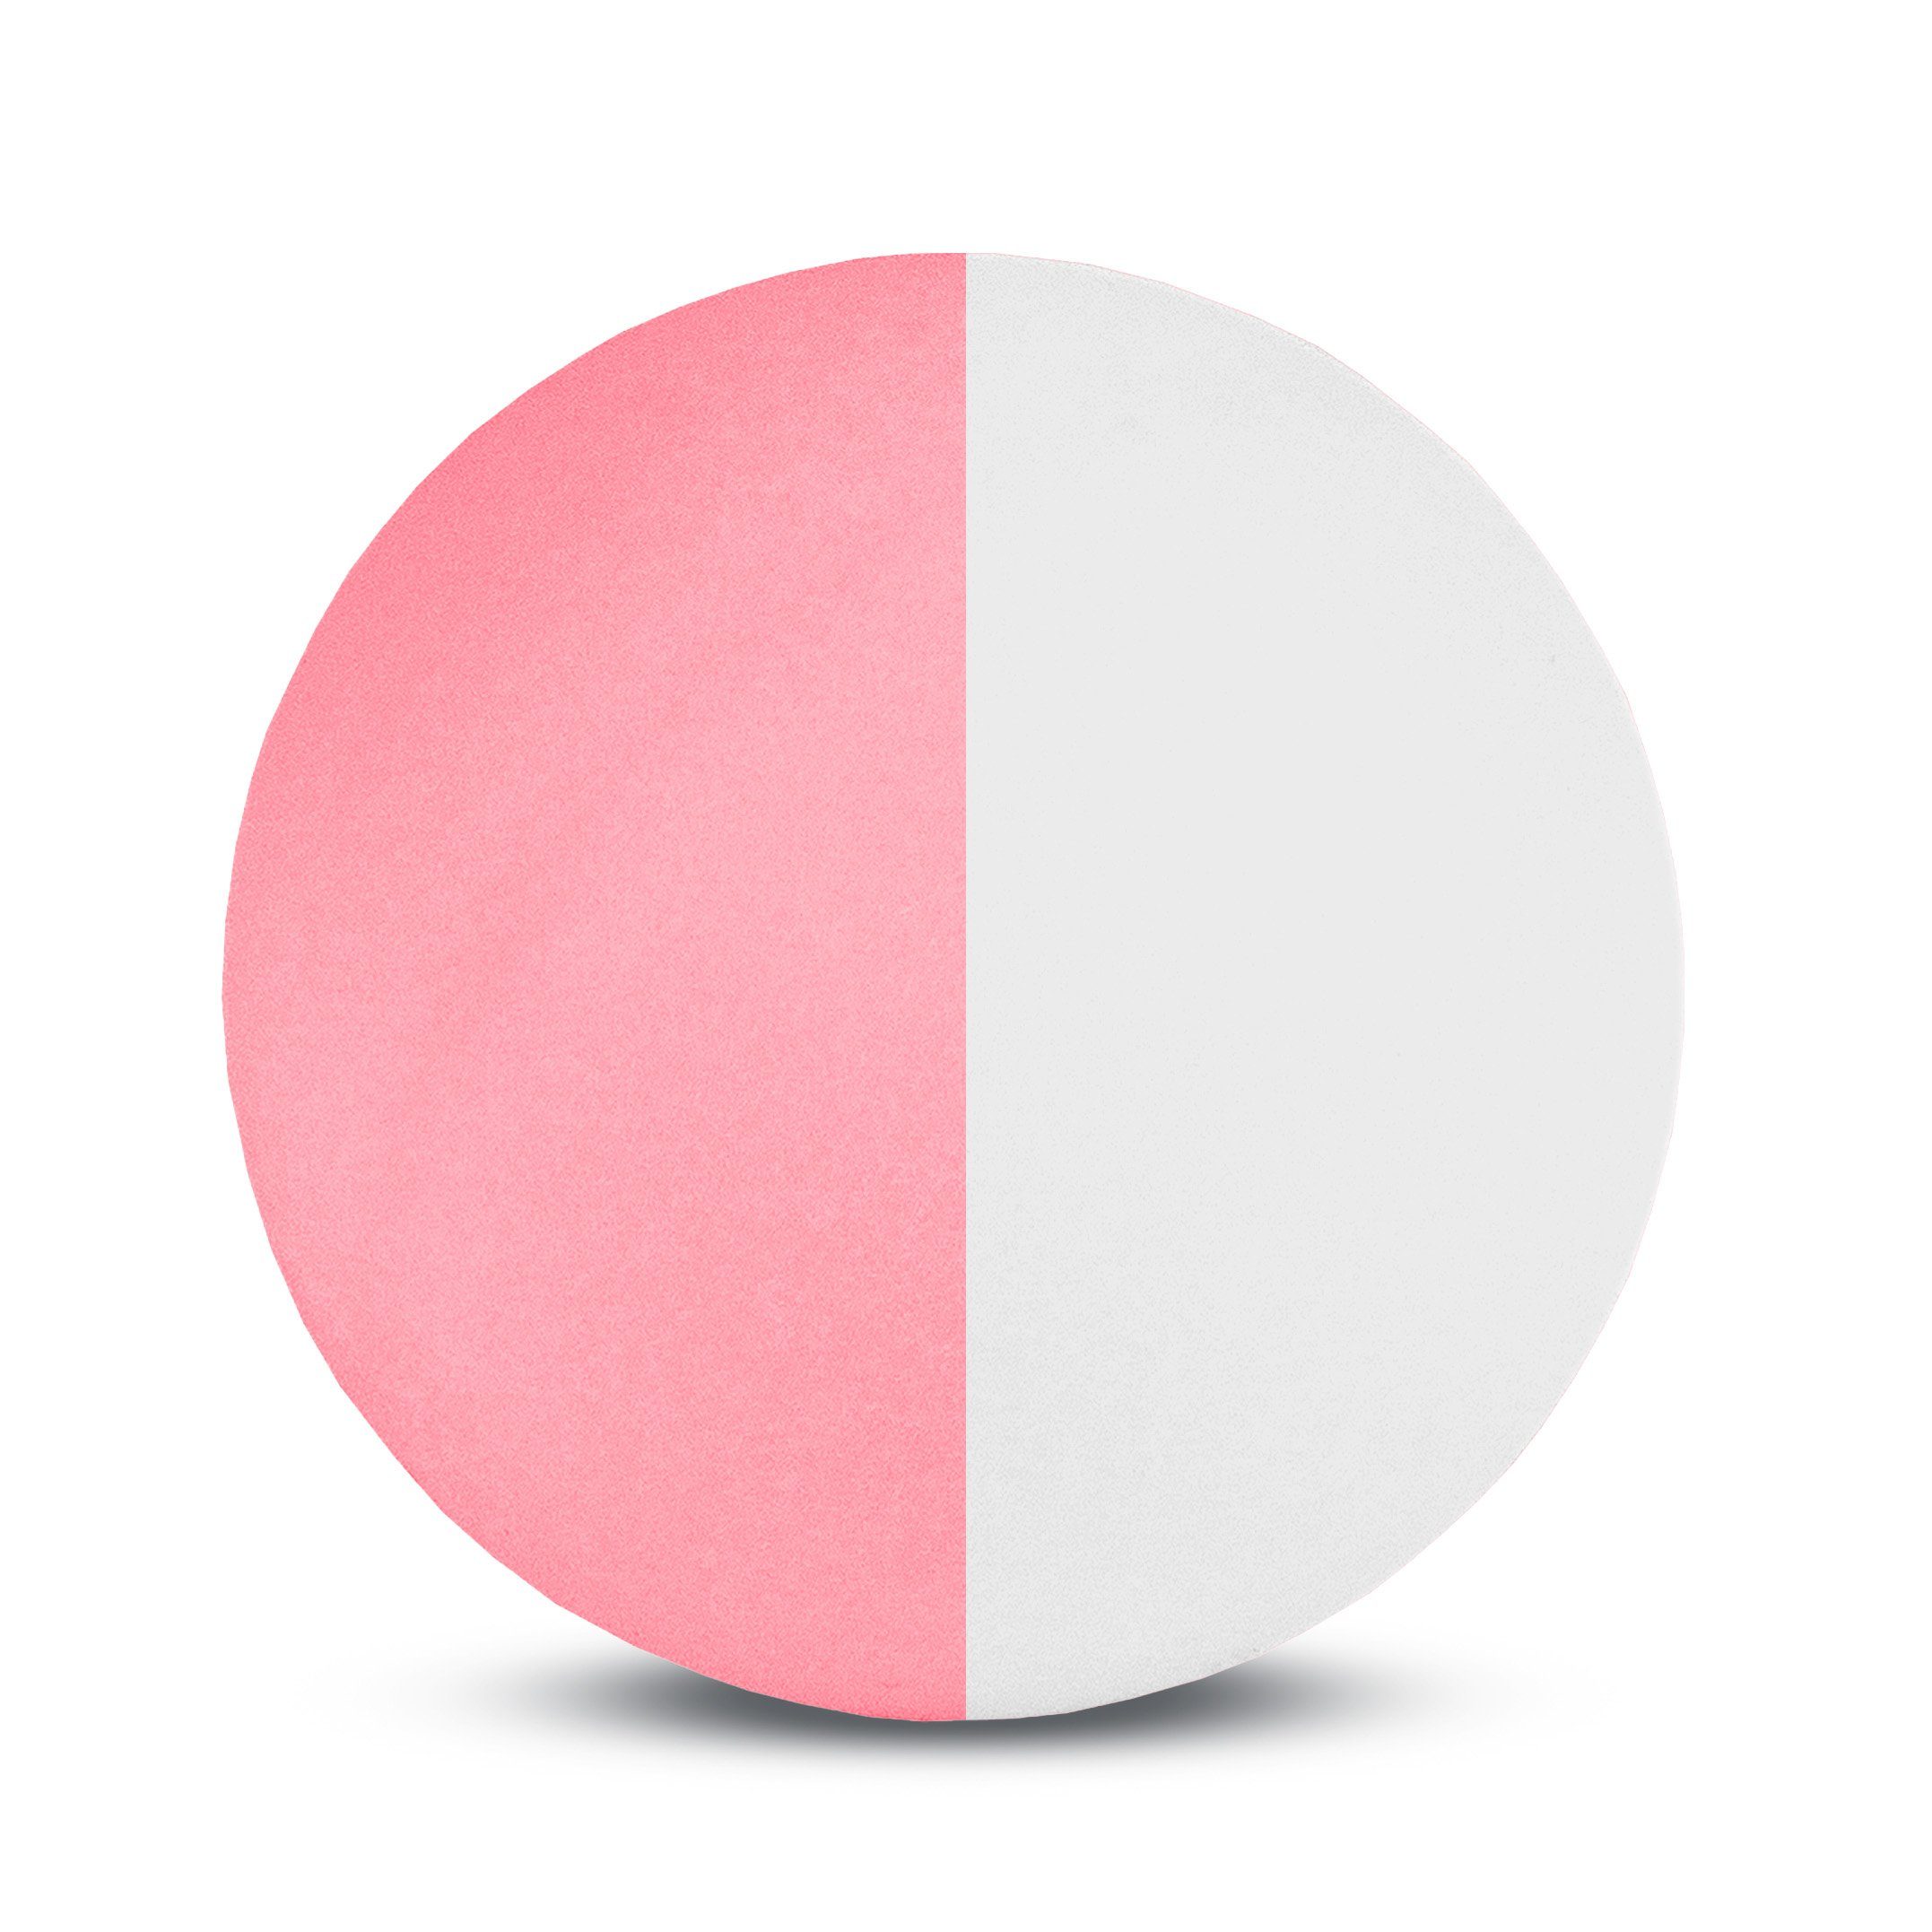 Sunflex Tischtennisball 1 Ball Weiß-Pink, Tischtennis Bälle Tischtennisball Ball Balls